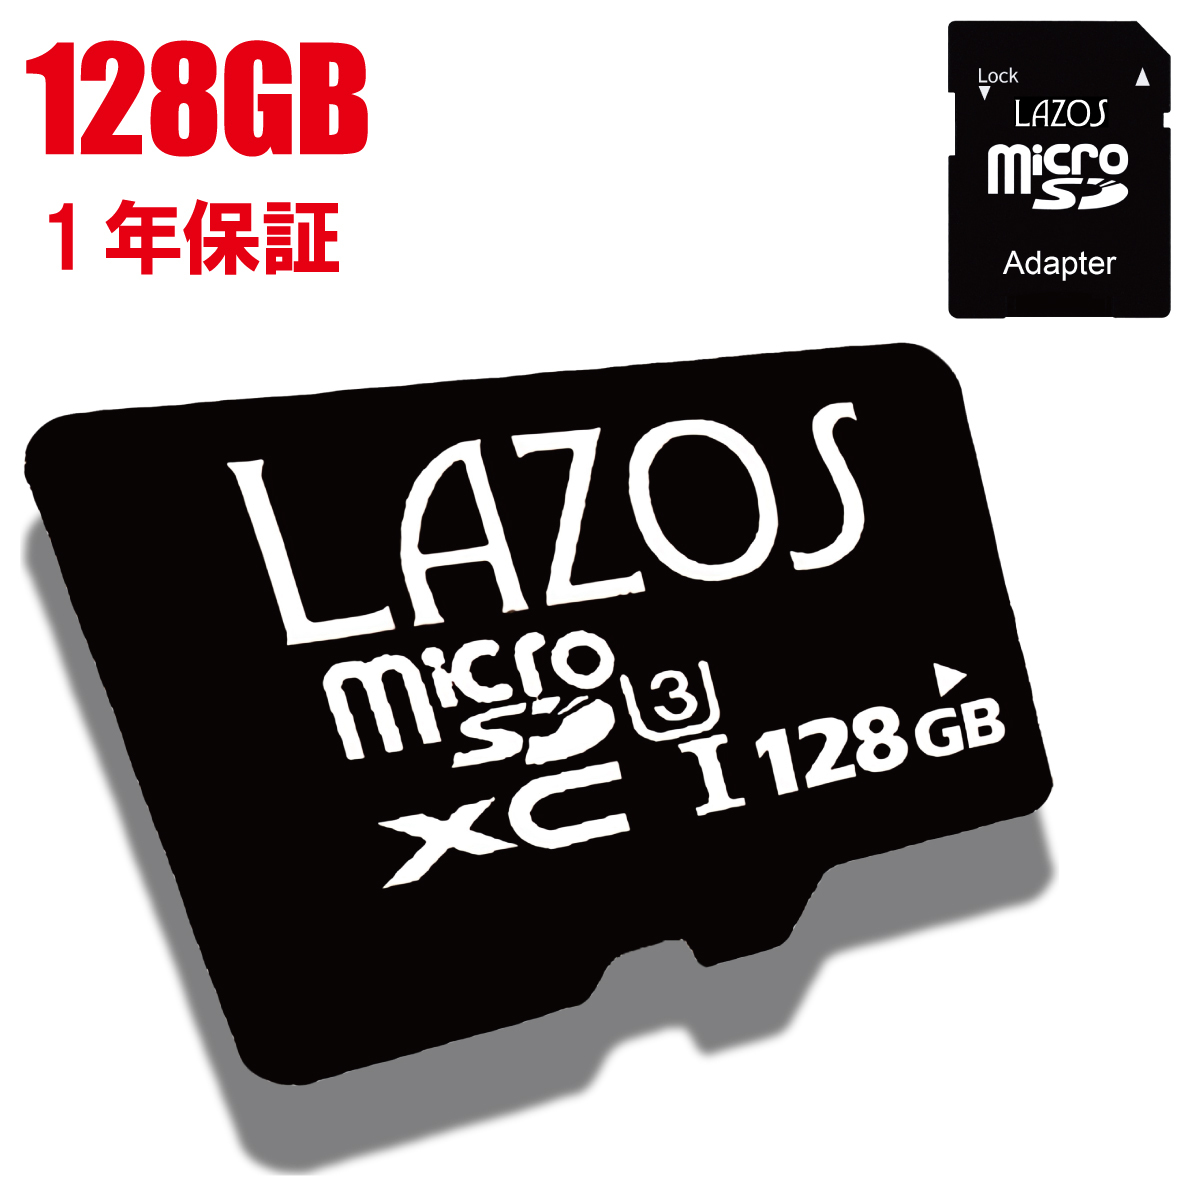 任天堂 スイッチ マイクロsdカード 128GB microsdカード　マリオ